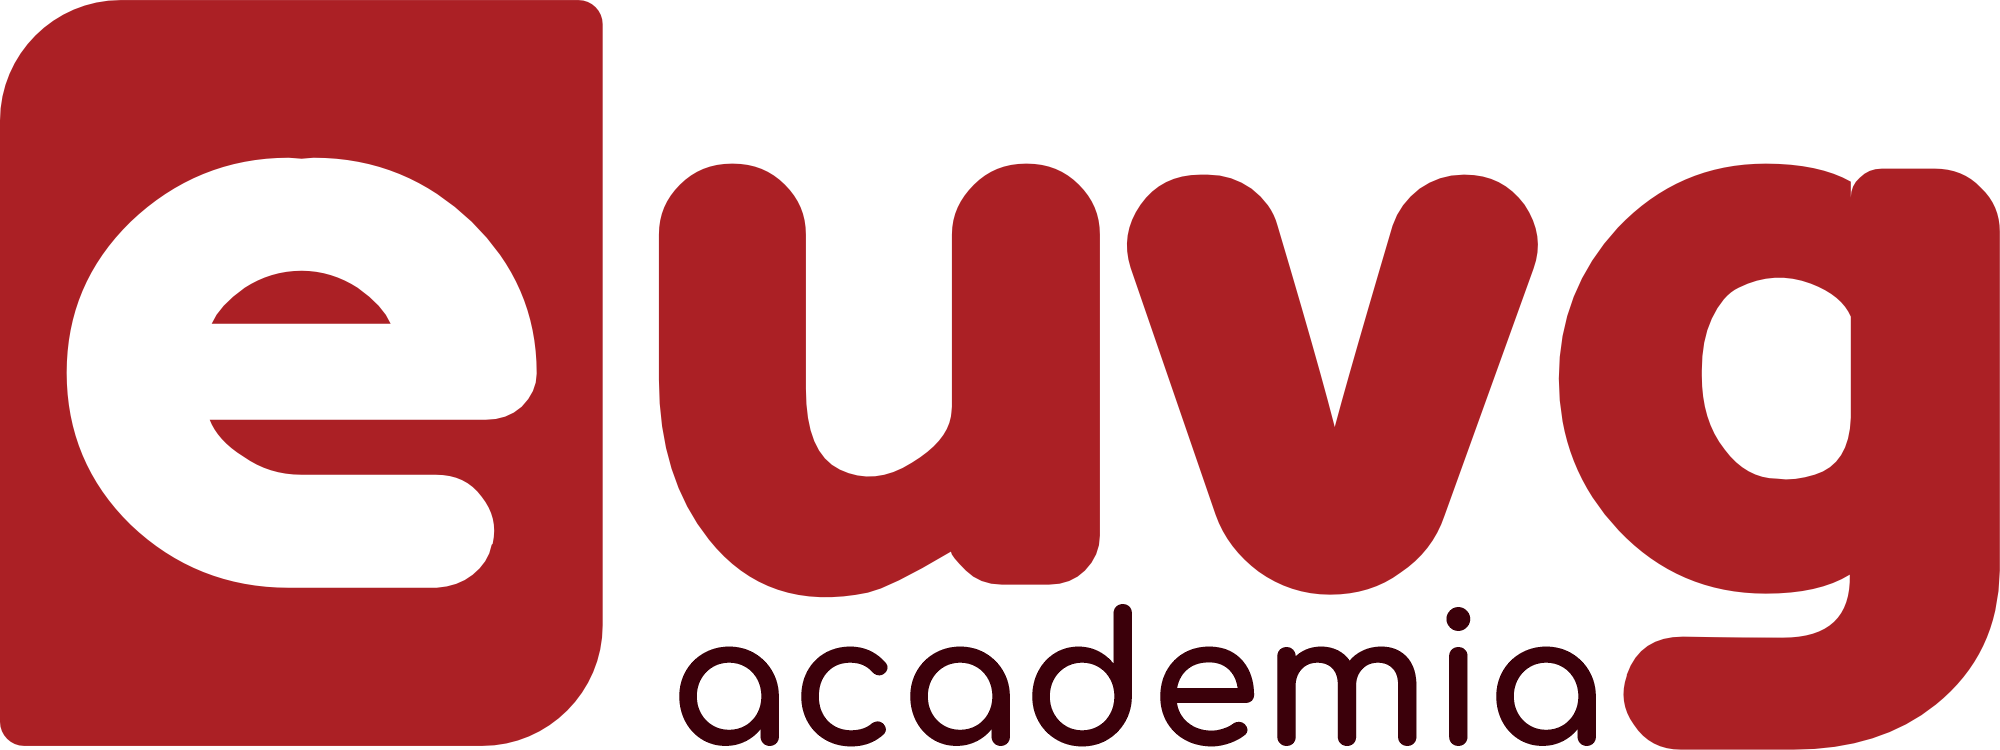 EUVG Academia